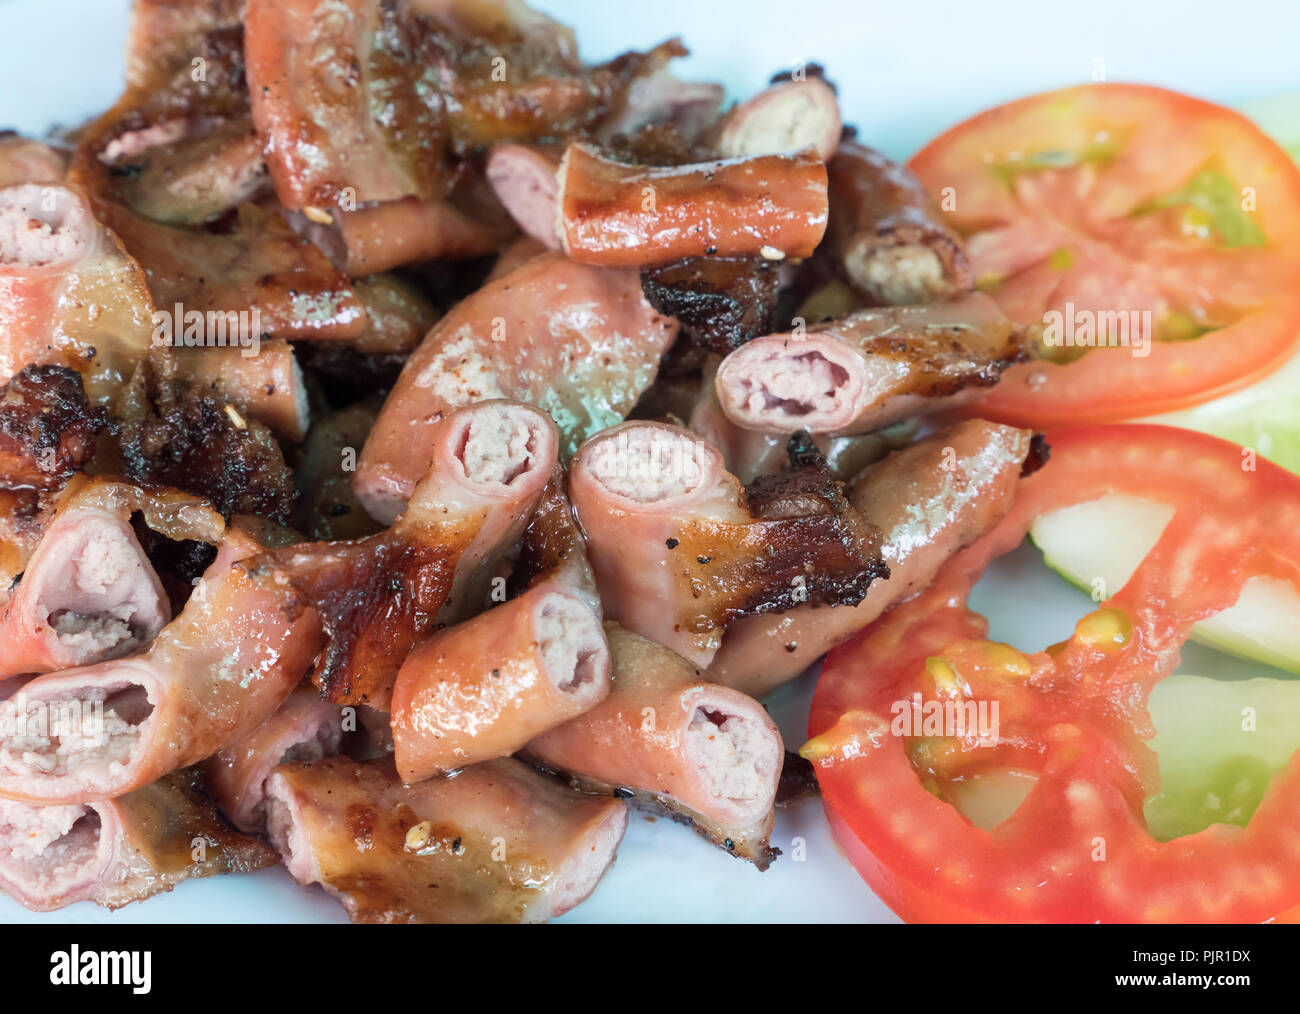 Schweinebraten chitterlings im traditionellen thailändischen Stil serviert mit frischem Gemüse. Stockfoto